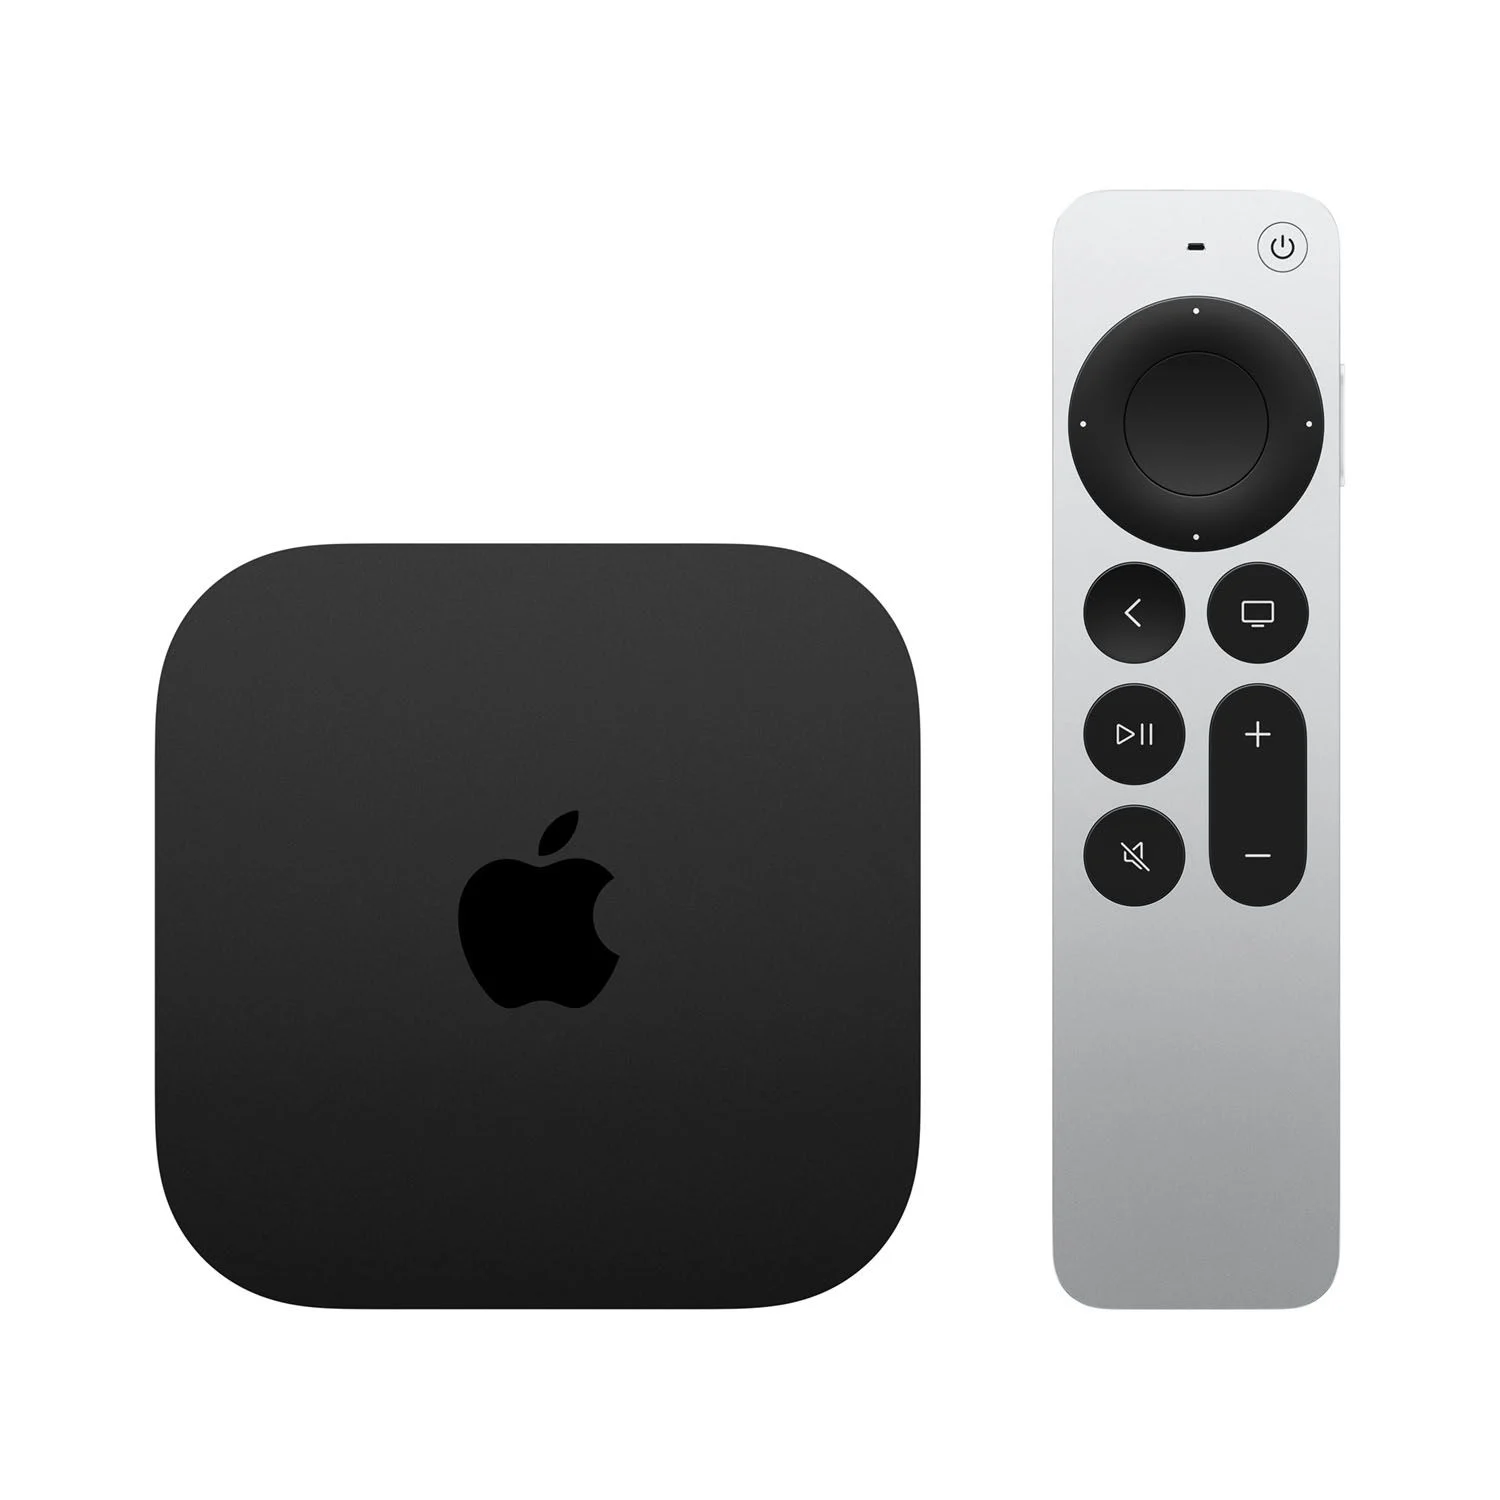 Apple TV 64GB 4K (3. Generation) - Siri Remote nicht enthalten